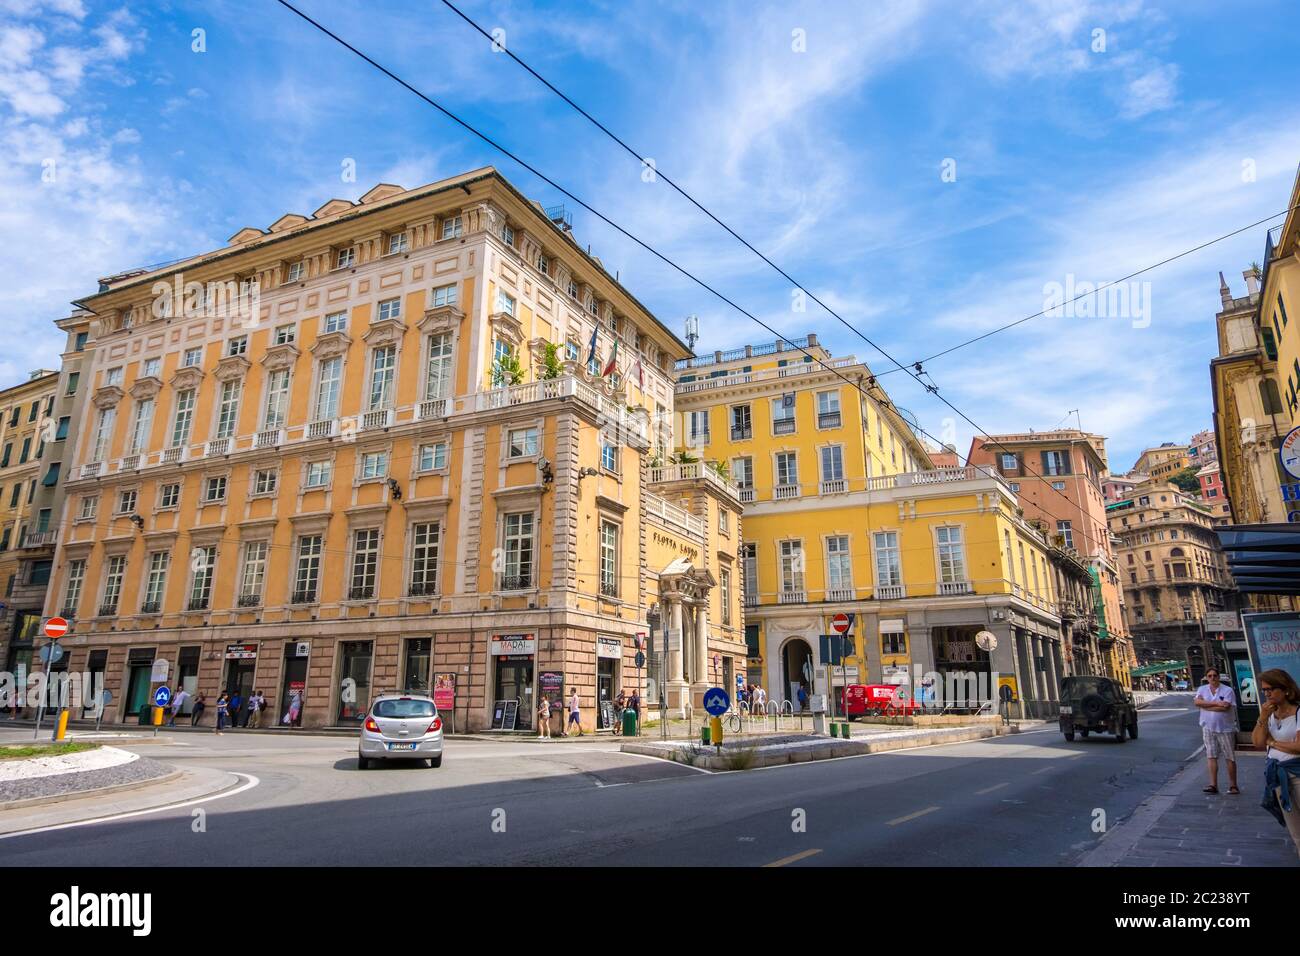 Genoa, Italy - August 20, 2019: The Nicolo Lomellini palace, also known as Palazzo Lauro in Piazza della Nunziata in the historic center of Genoa Stock Photo